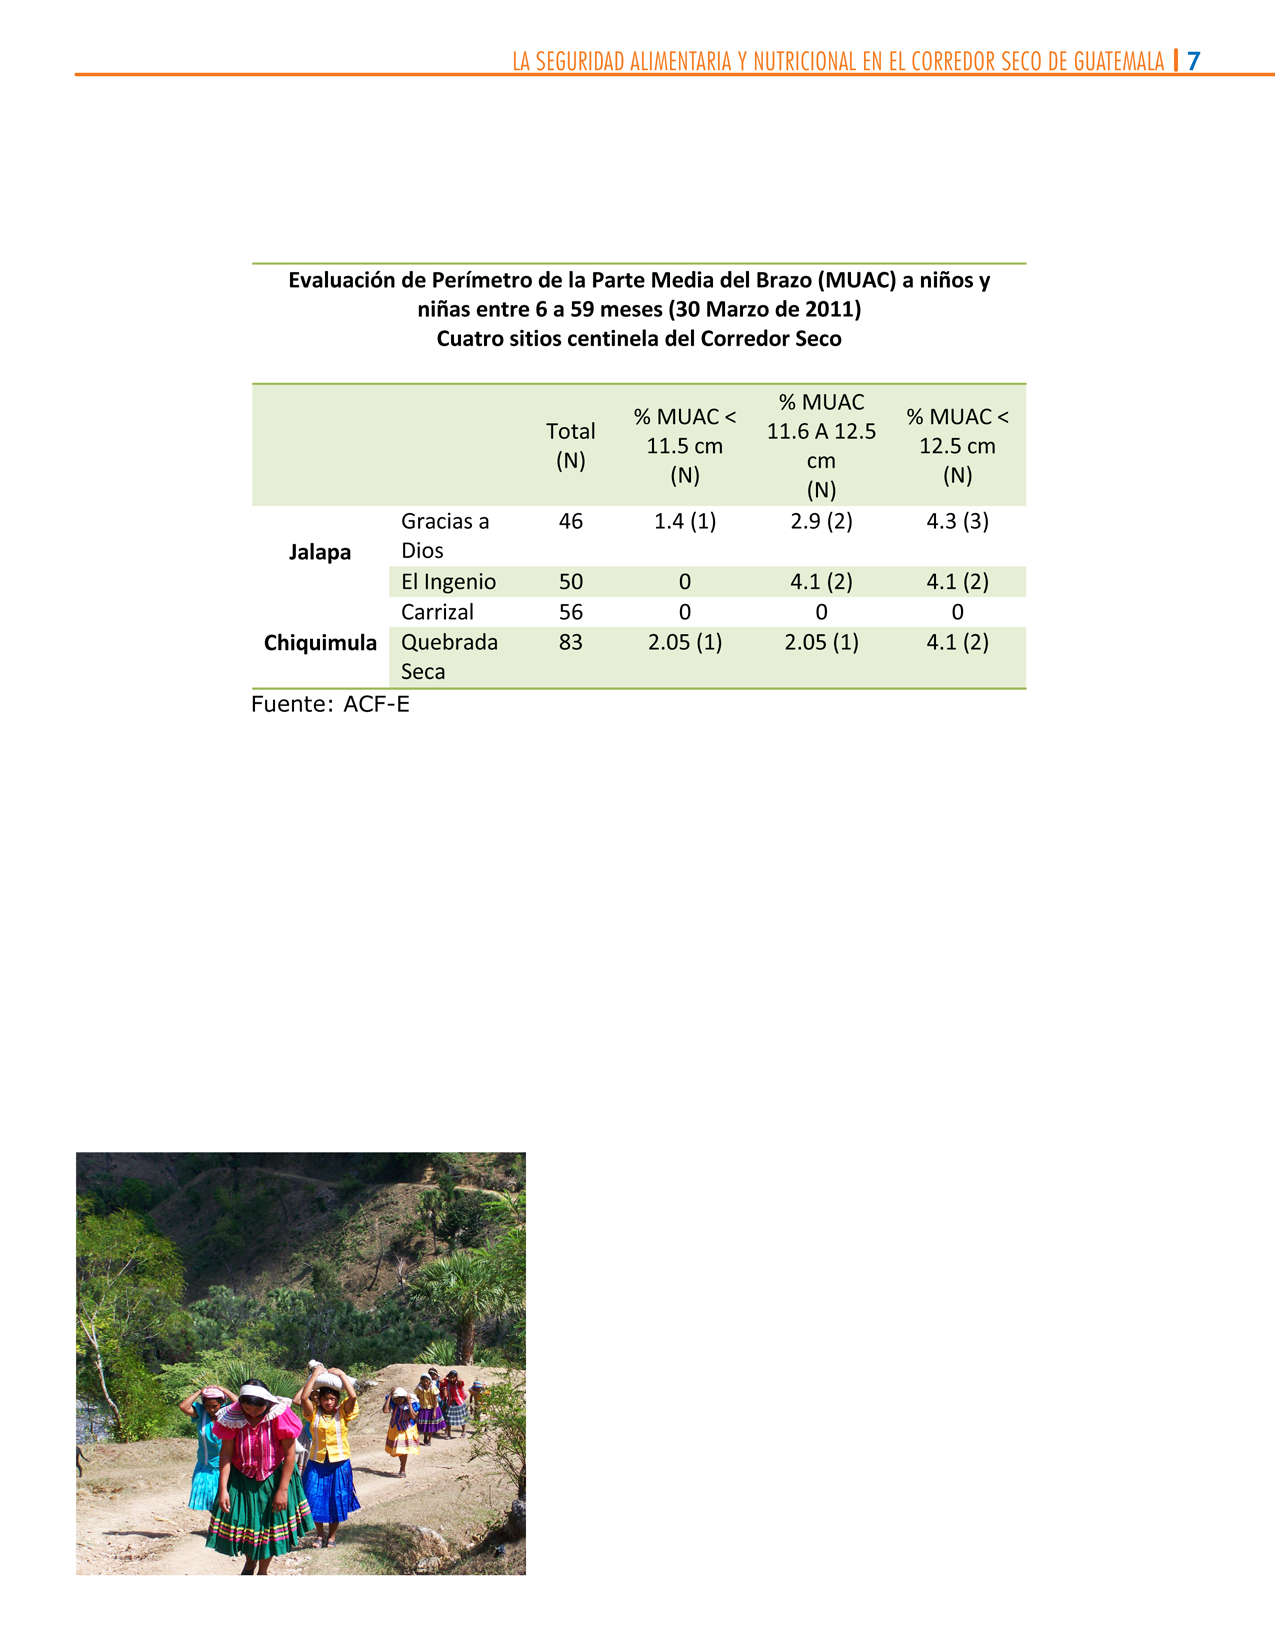 Utilización Biológica de los Alimentos Con el fin de hacer un sondeo rápido nutricional, se seleccionaron aleatoriamente 2 sitios de Jalapa y 2 en Chiquimula, en los cuales se realizó una medición de